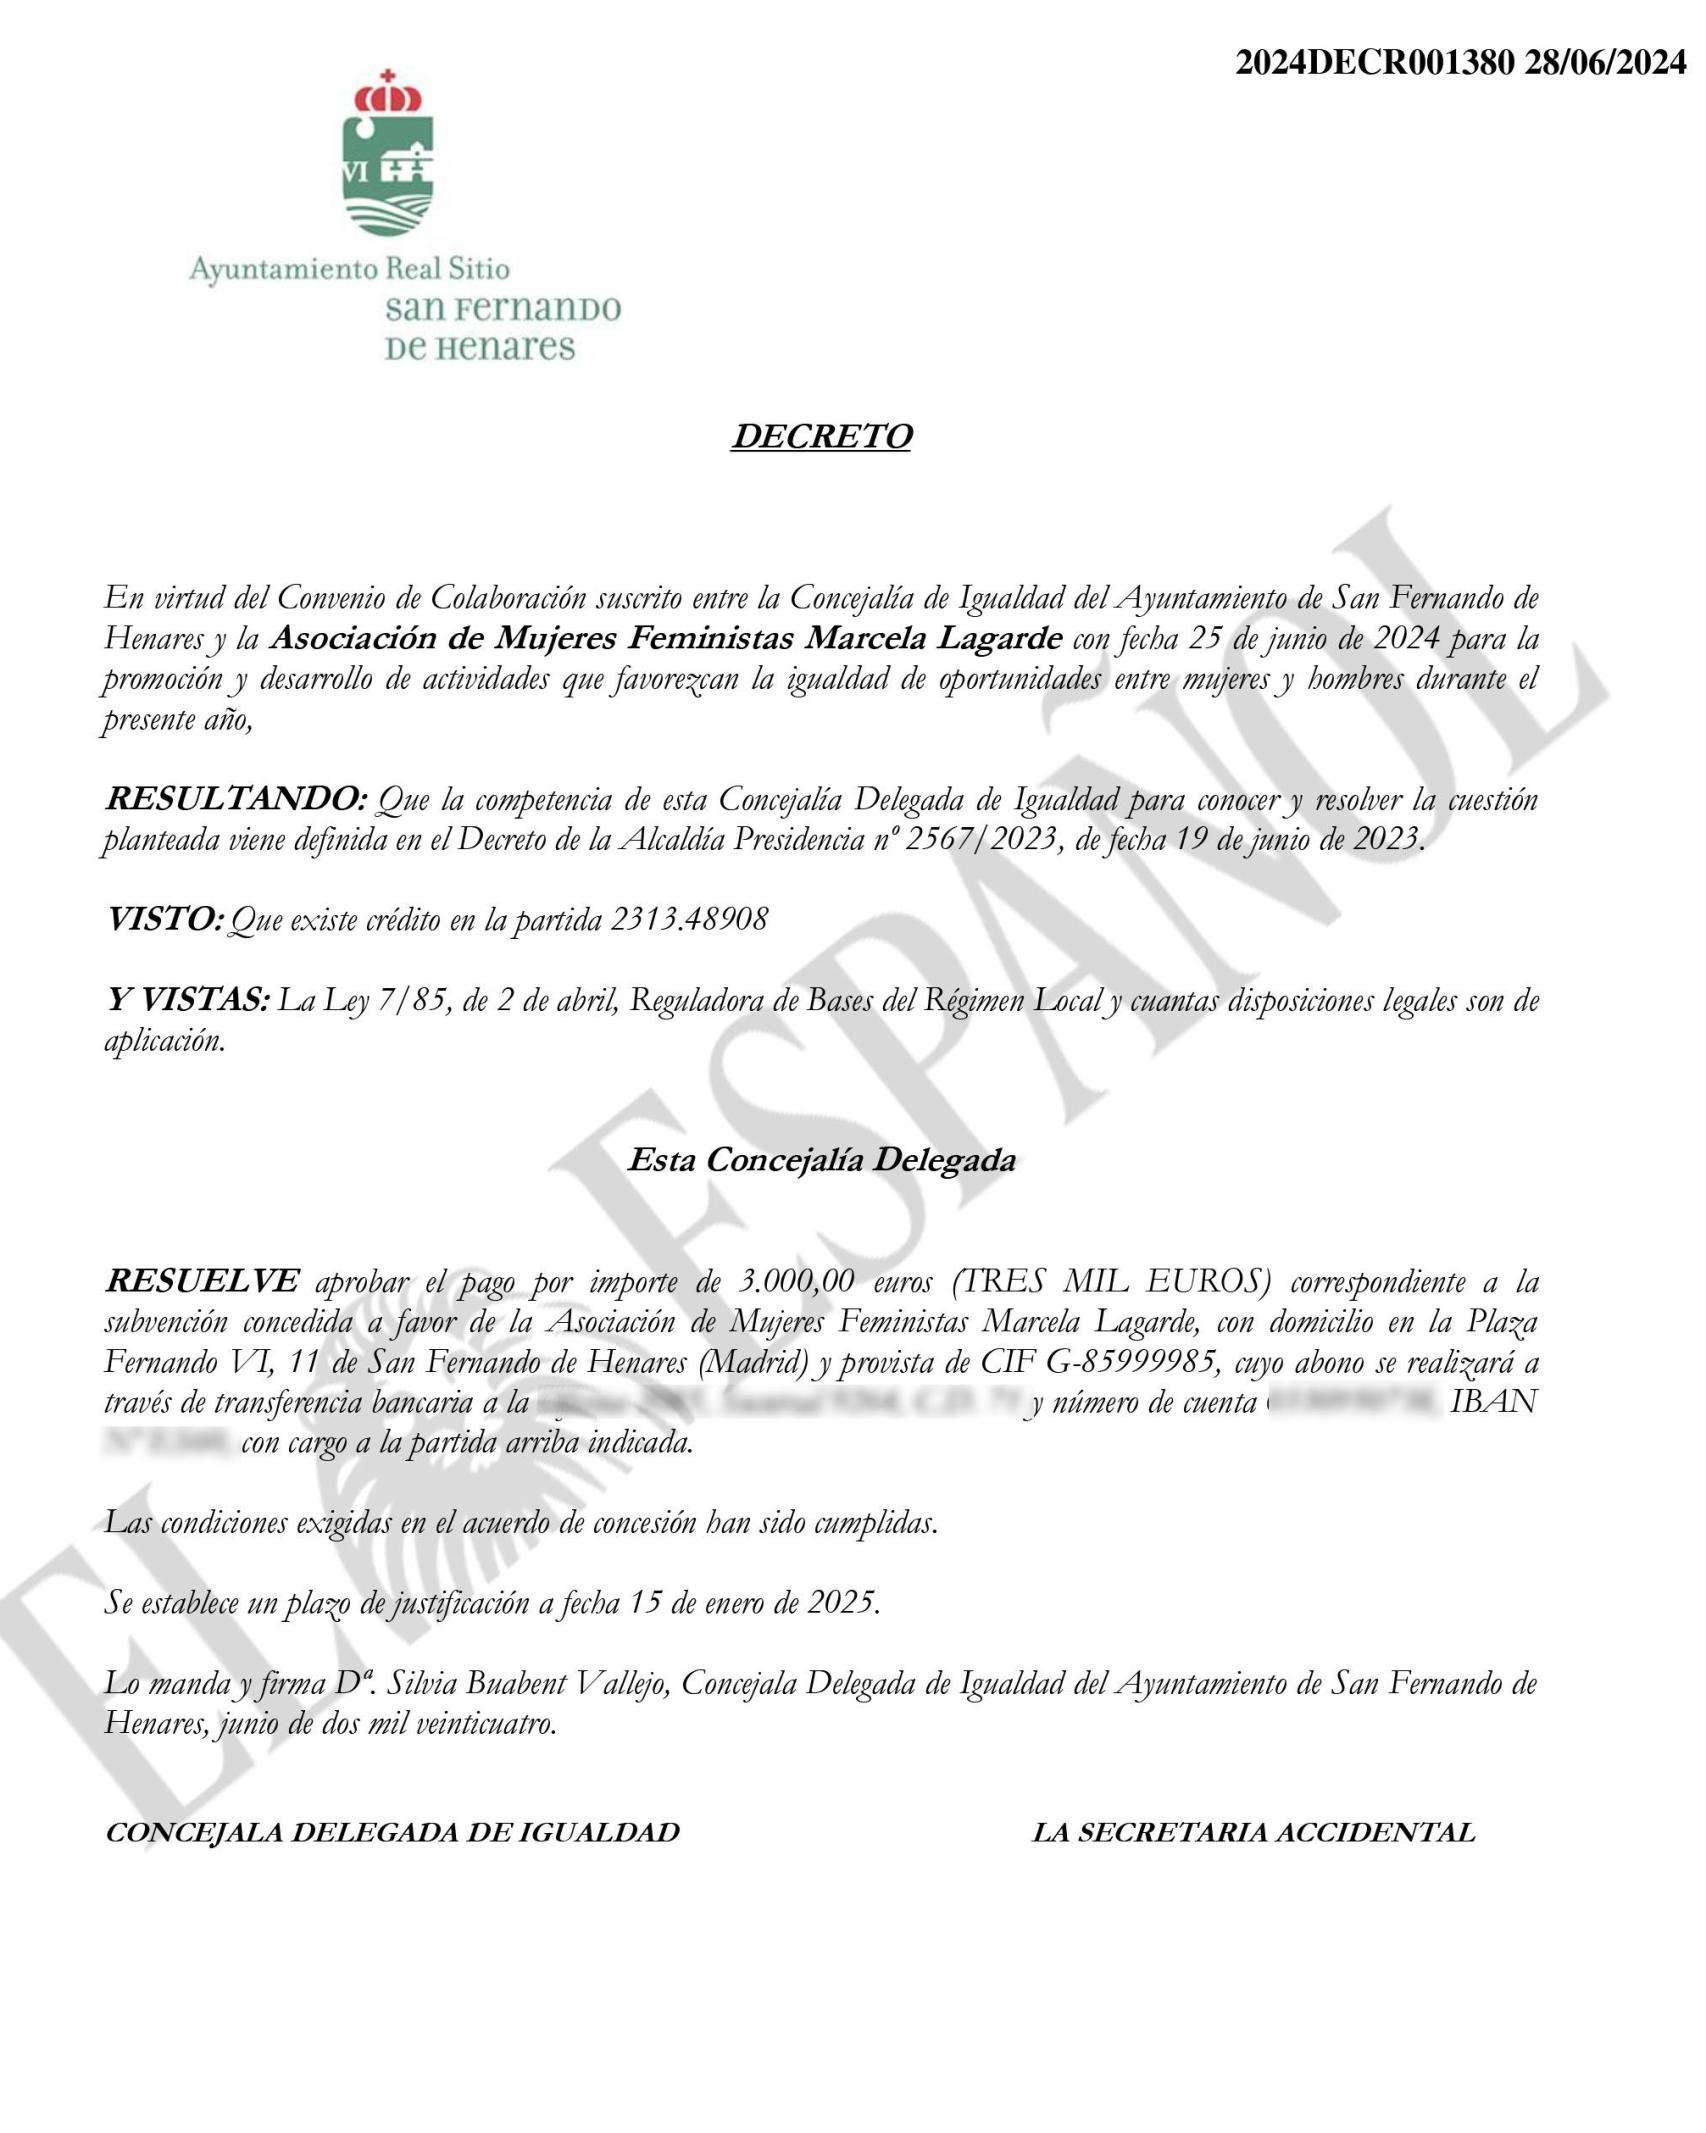 Decreto del convenio de 2024 entre el Ayuntamiento de San Fernando de Henares y la Asociación Marcela Lagarde.